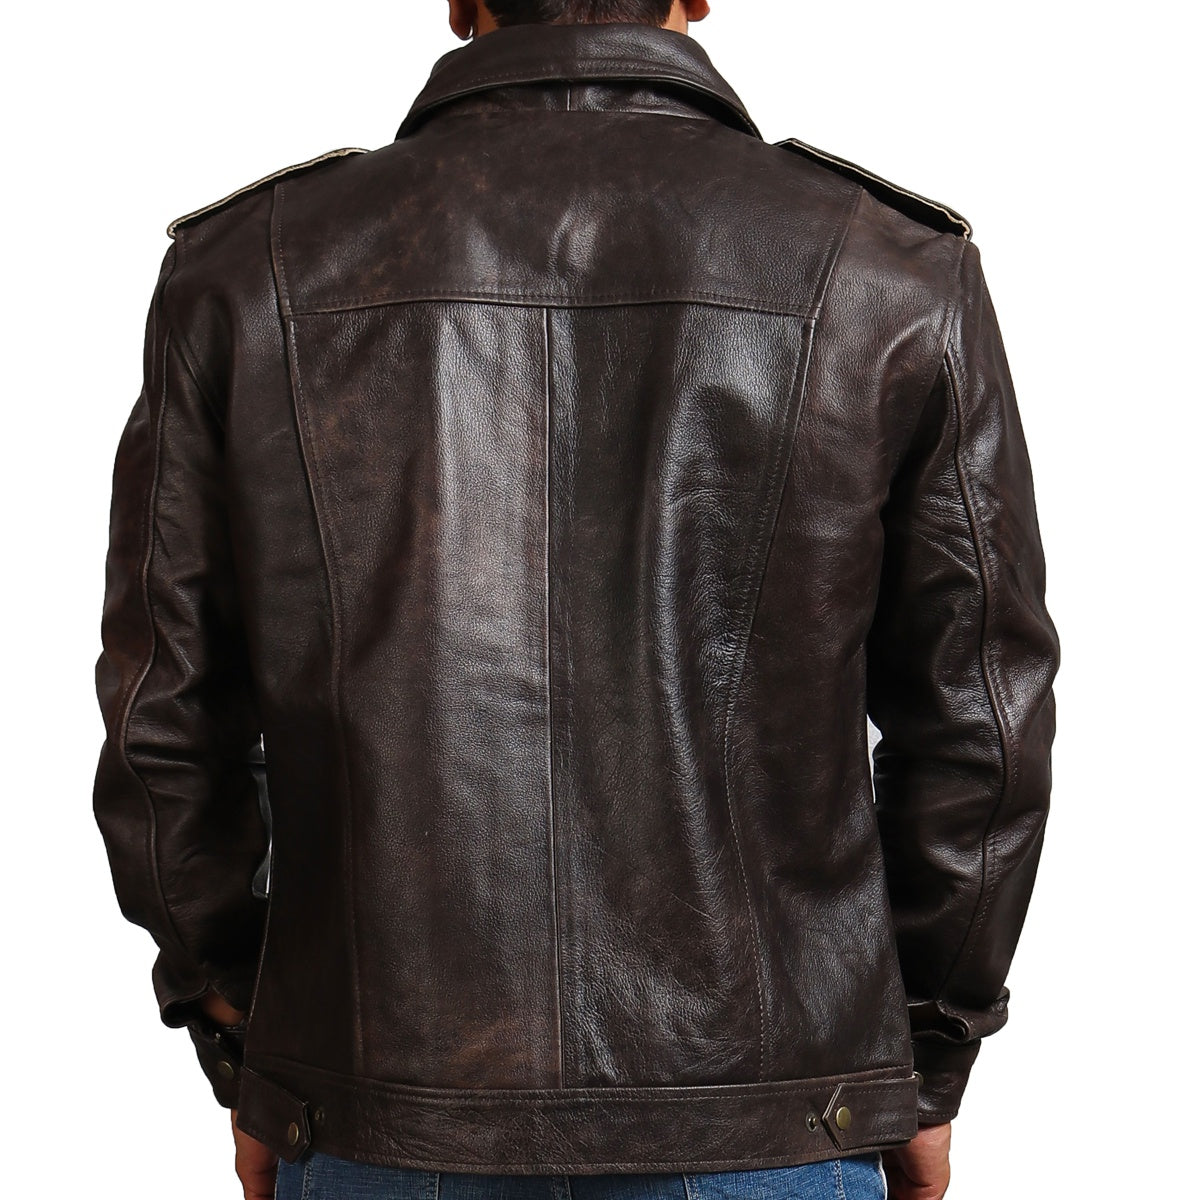  Leather Trucker Jacket Dark Brown